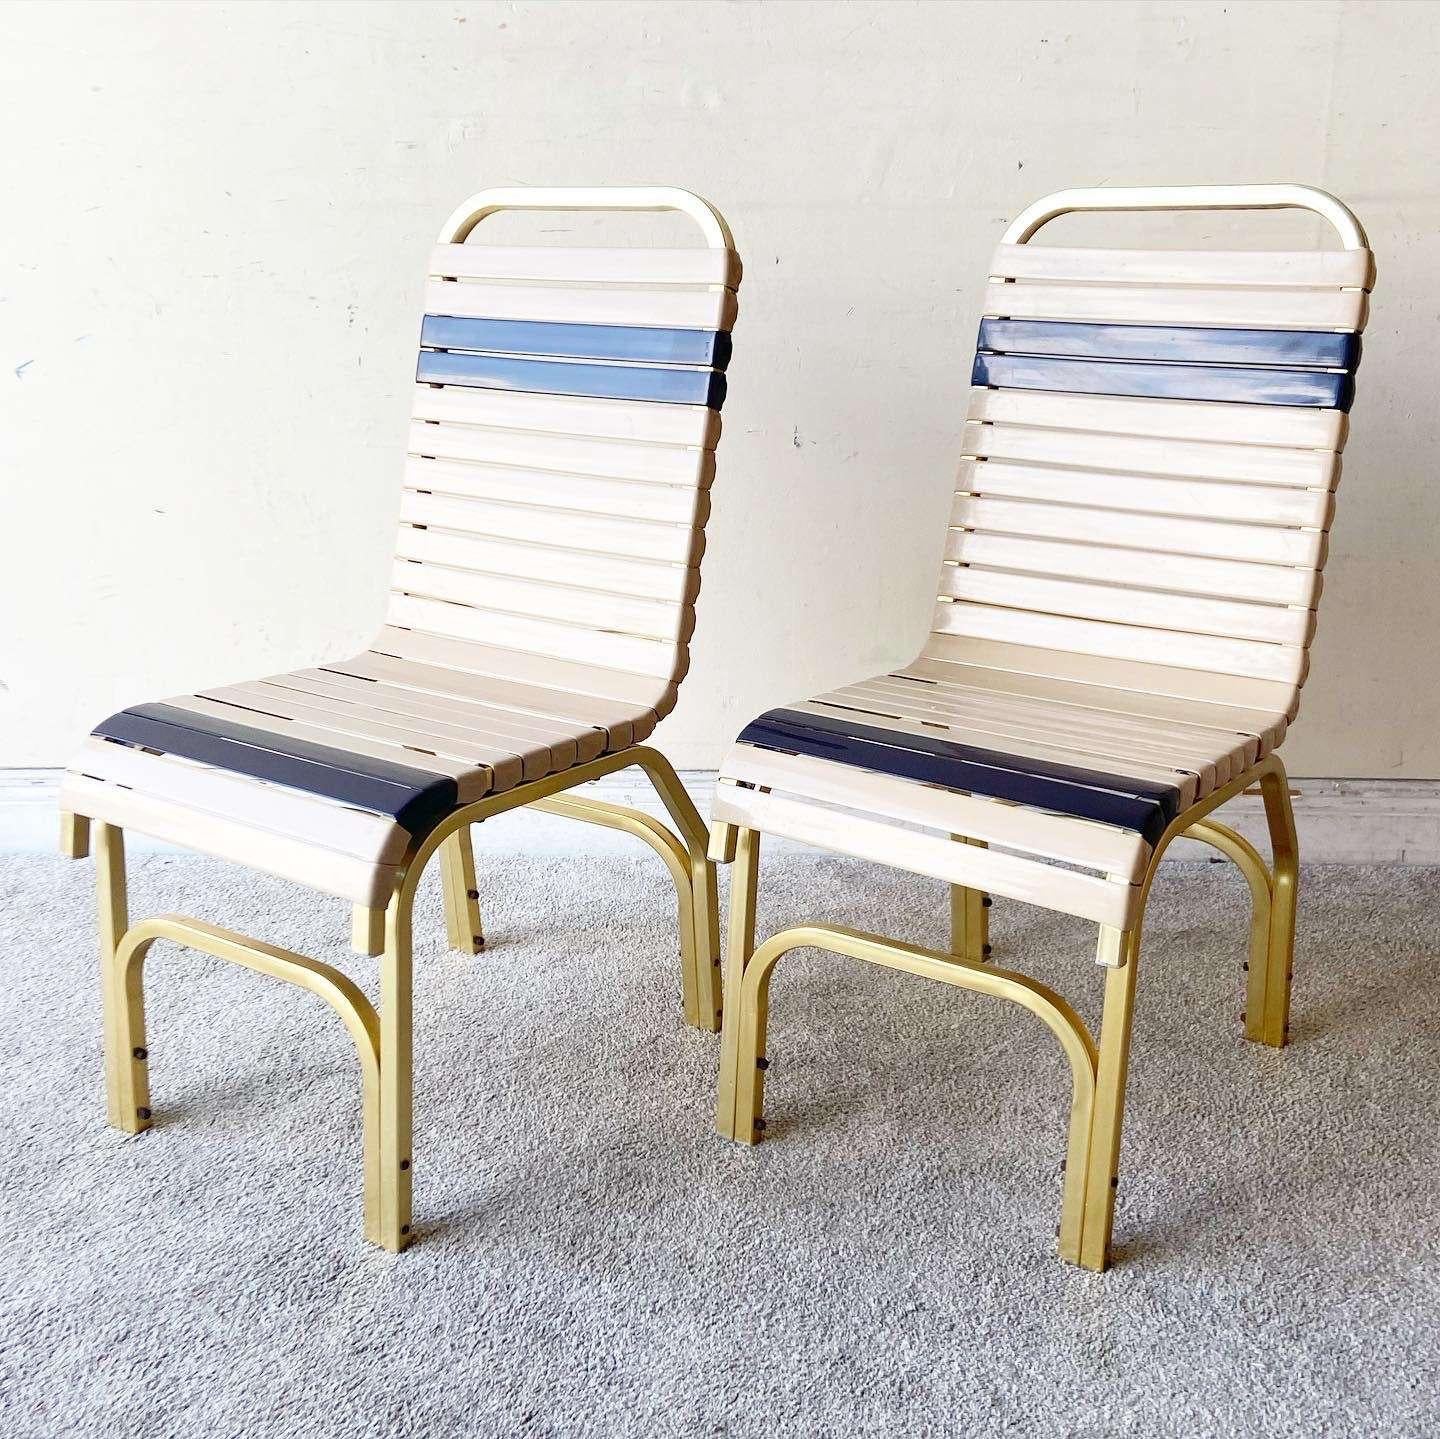 Wunderschöne Vintage Mitte des Jahrhunderts moderne Miami Pool Paar Stühle mit Tisch. Die Stühle und der Tisch haben einen Aluminium-Metallrahmen. Der Tisch hat eine Glasfaserplatte und die Stühle haben Sitz- und Rückenlehnen aus Gummiband.